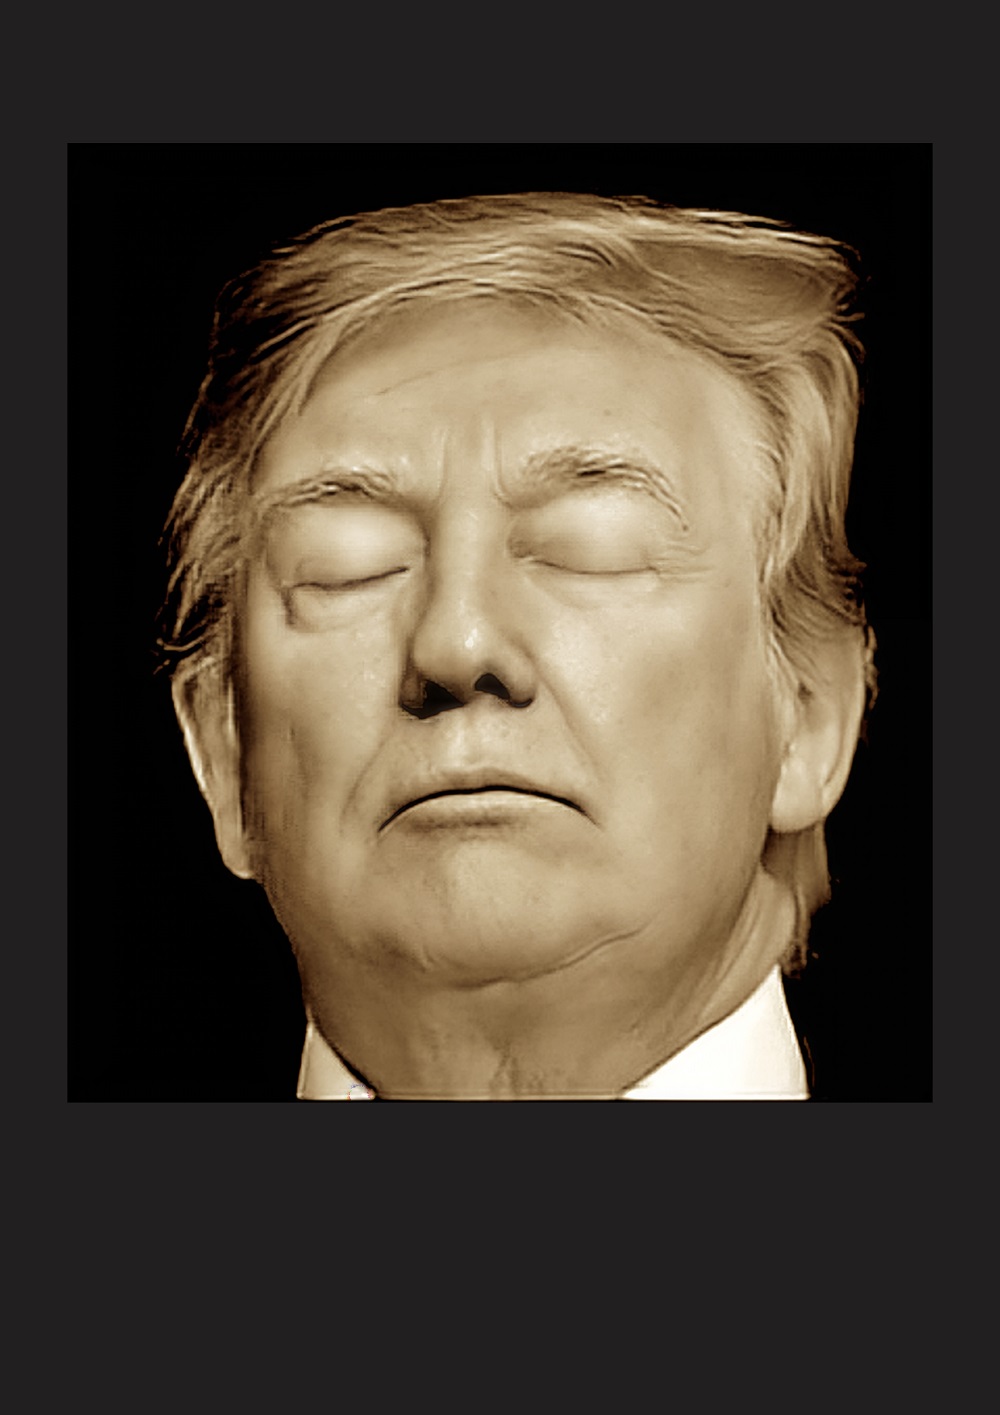 Donald Trump by Jon Carapiet/AI